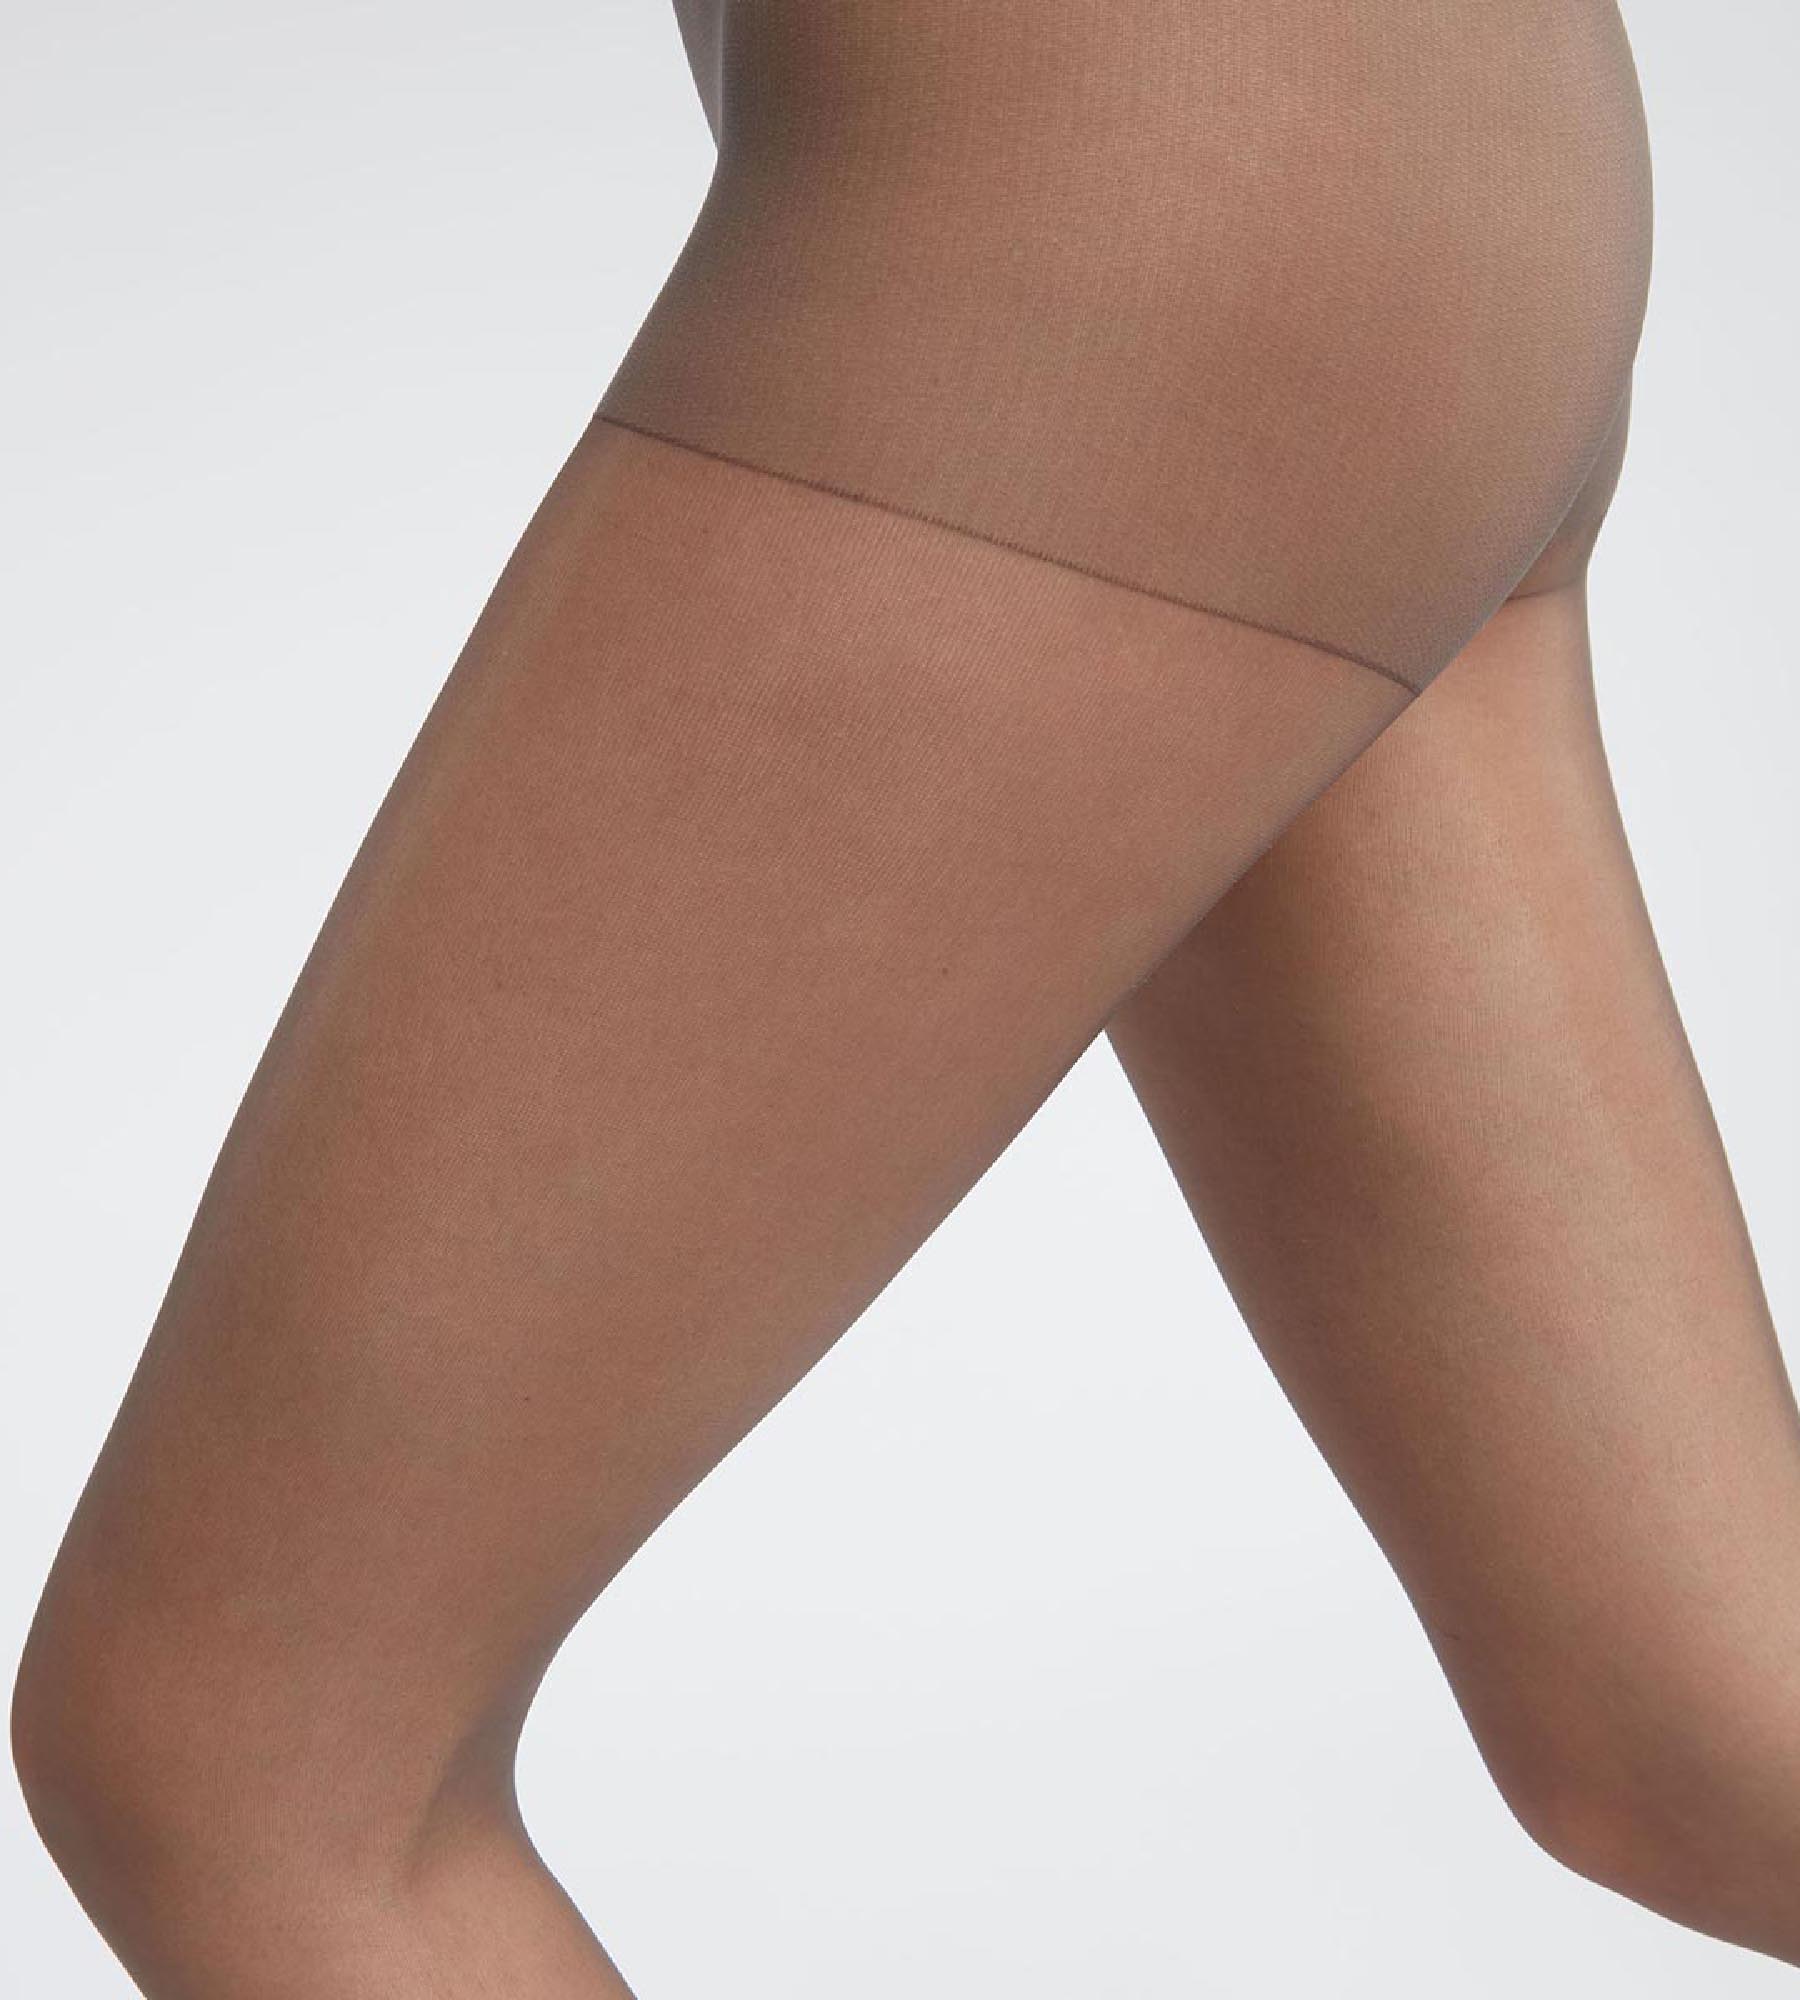 2DXuixsh Undergarment for Sheer Dress Women High Waist Leggings